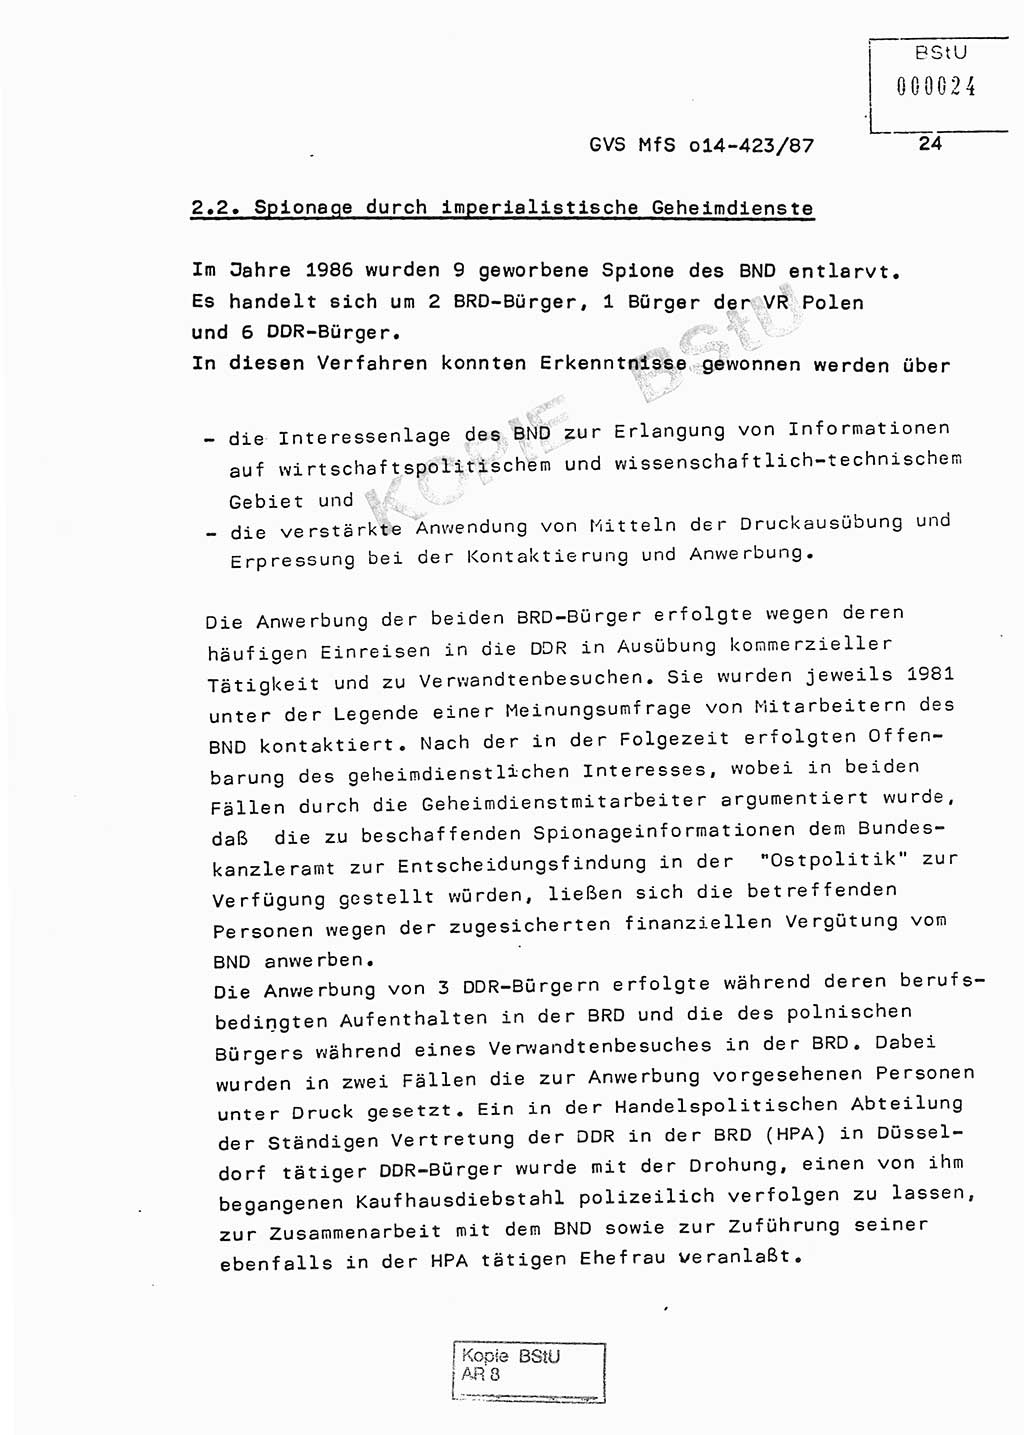 Jahresbericht der Hauptabteilung (HA) Ⅸ 1986, Einschätzung der Wirksamkeit der Untersuchungsarbeit im Jahre 1986, Ministerium für Staatssicherheit (MfS) der Deutschen Demokratischen Republik (DDR), Hauptabteilung Ⅸ, Geheime Verschlußsache (GVS) o014-423/87, Berlin 1987, Seite 24 (Einsch. MfS DDR HA Ⅸ GVS o014-423/87 1986, S. 24)